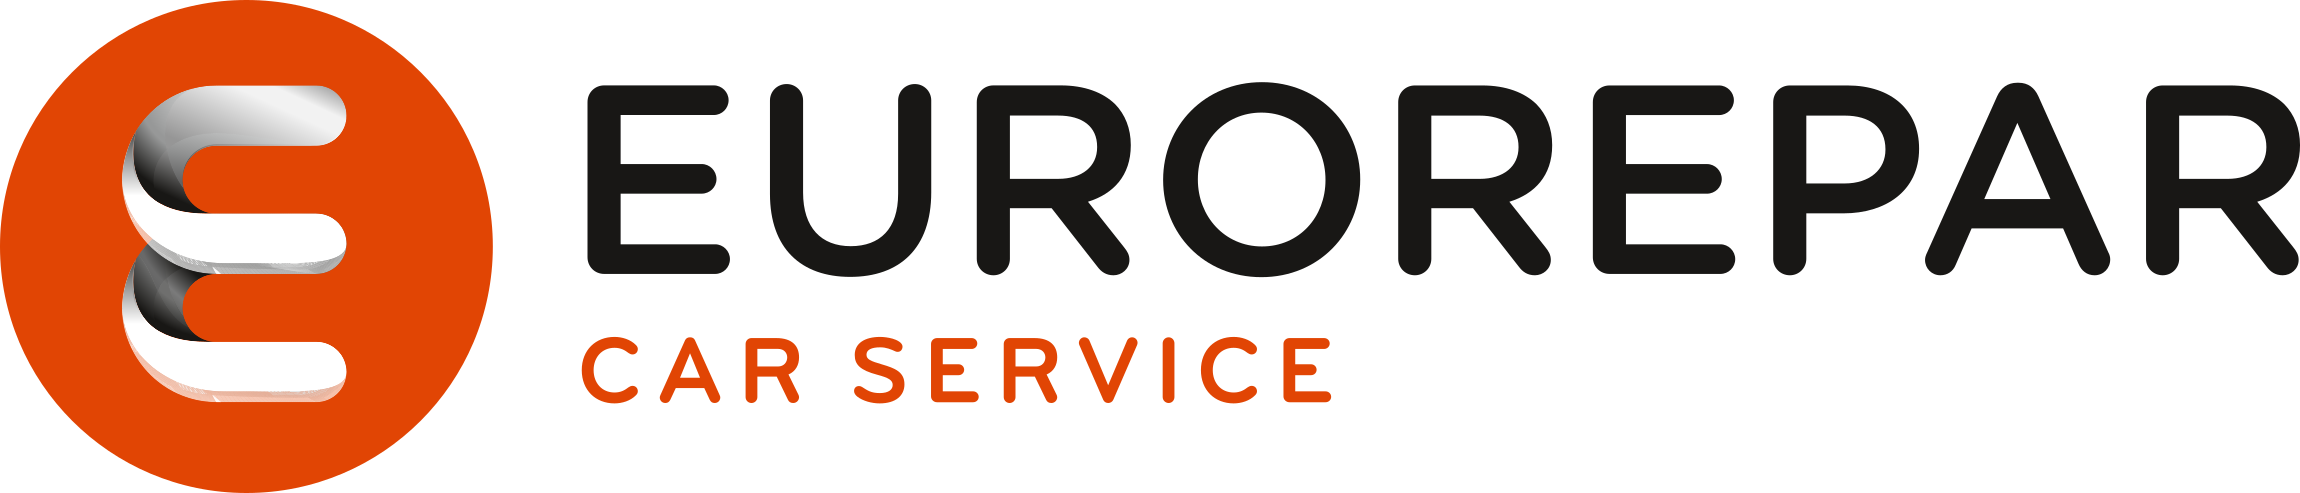 Euro Repar - Garage du four st jacques logo